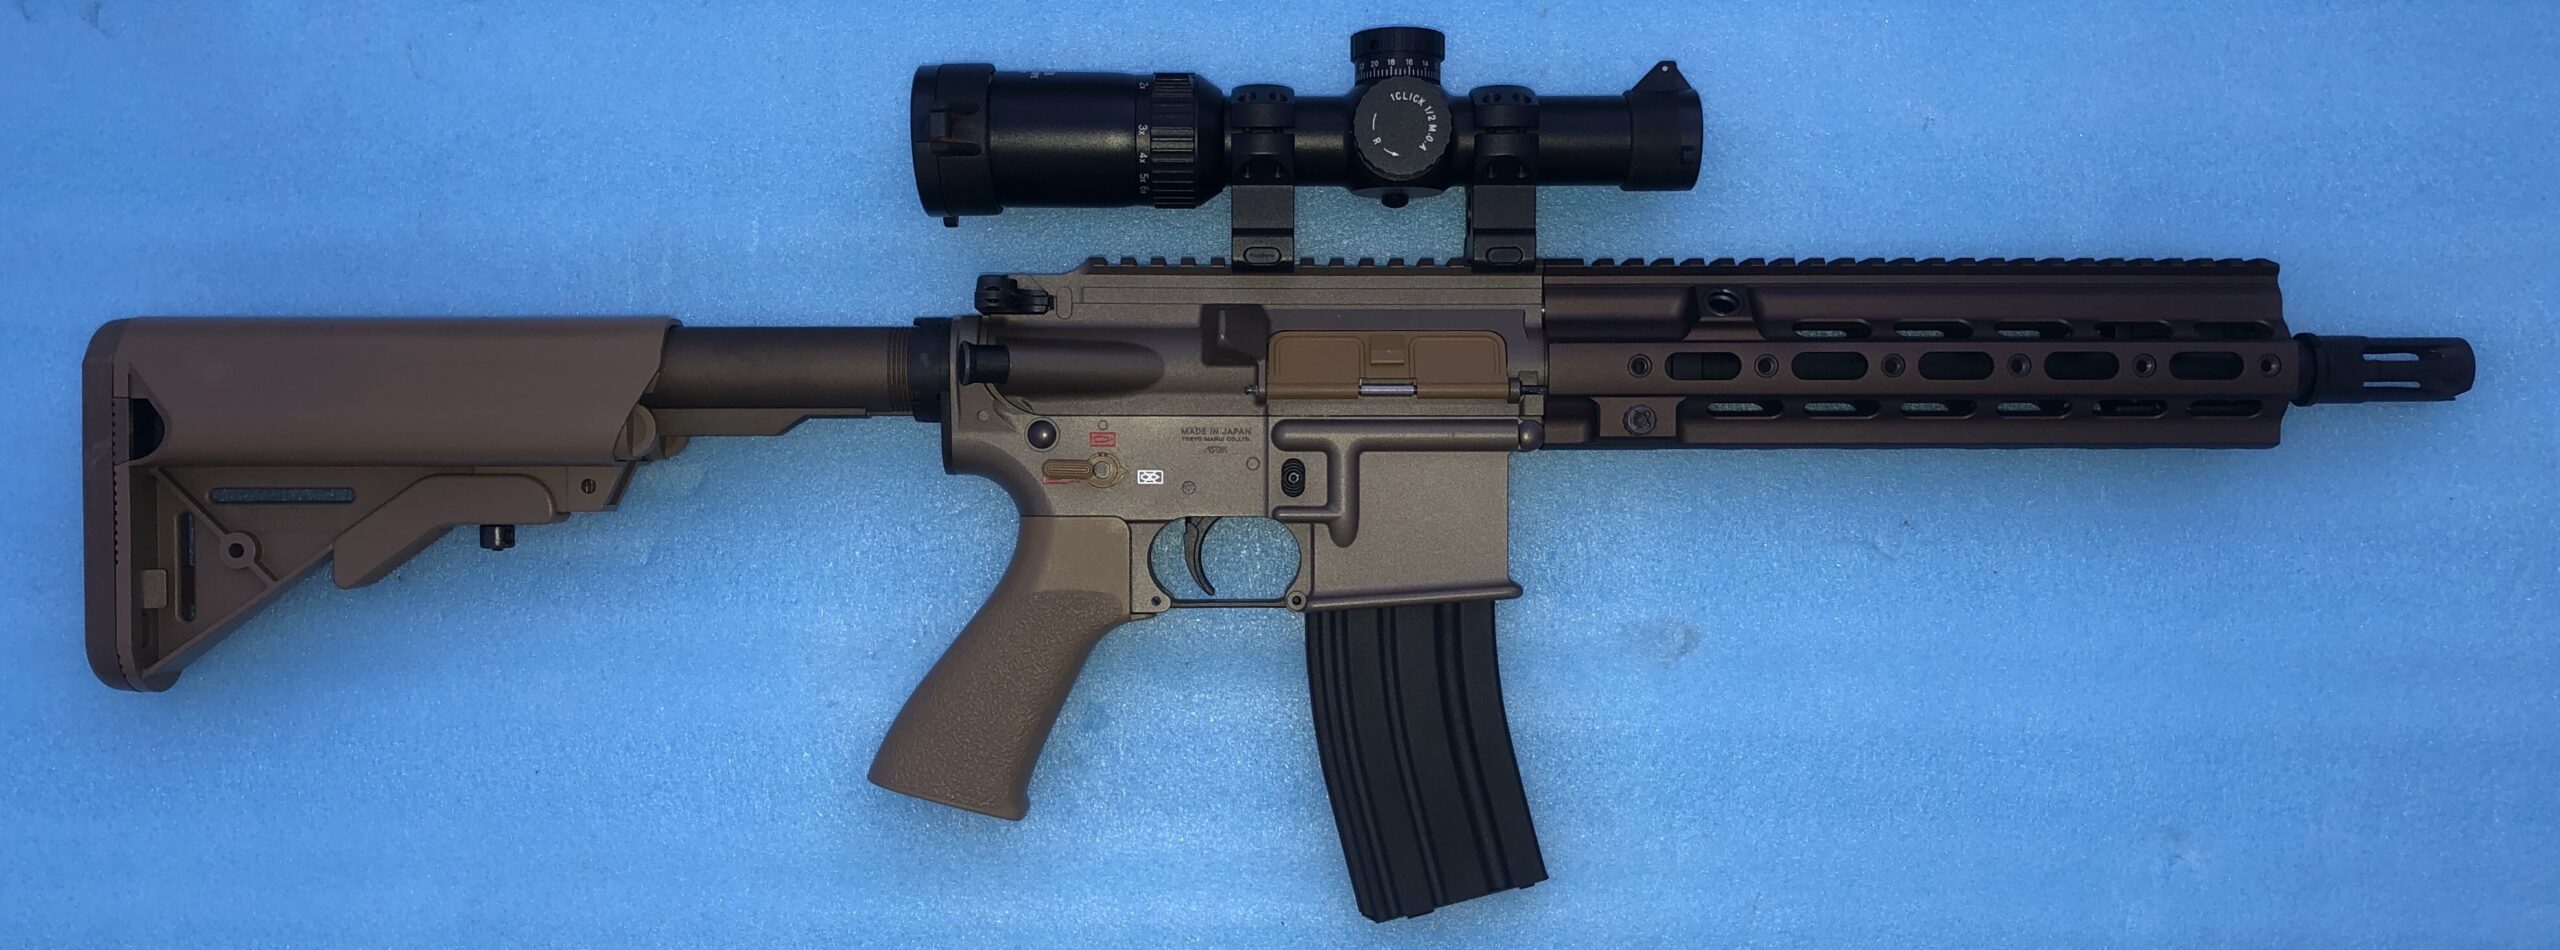 マルイ次世代HK416デルタ